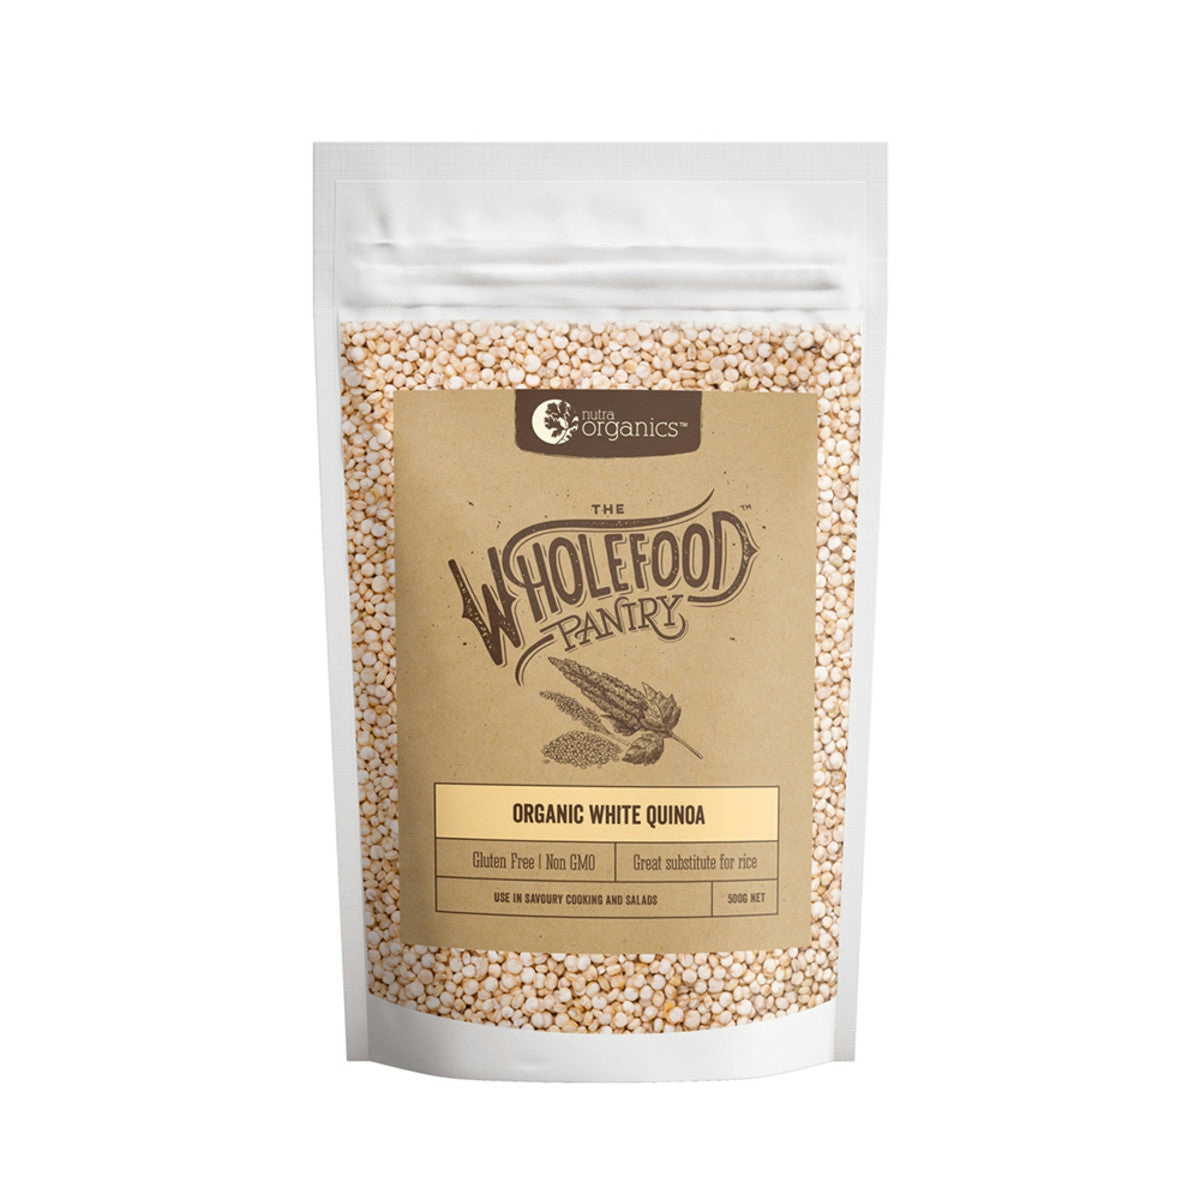 image of Nutra Organics Wholefood Pantry Organic White Quinoa 500g on white background 